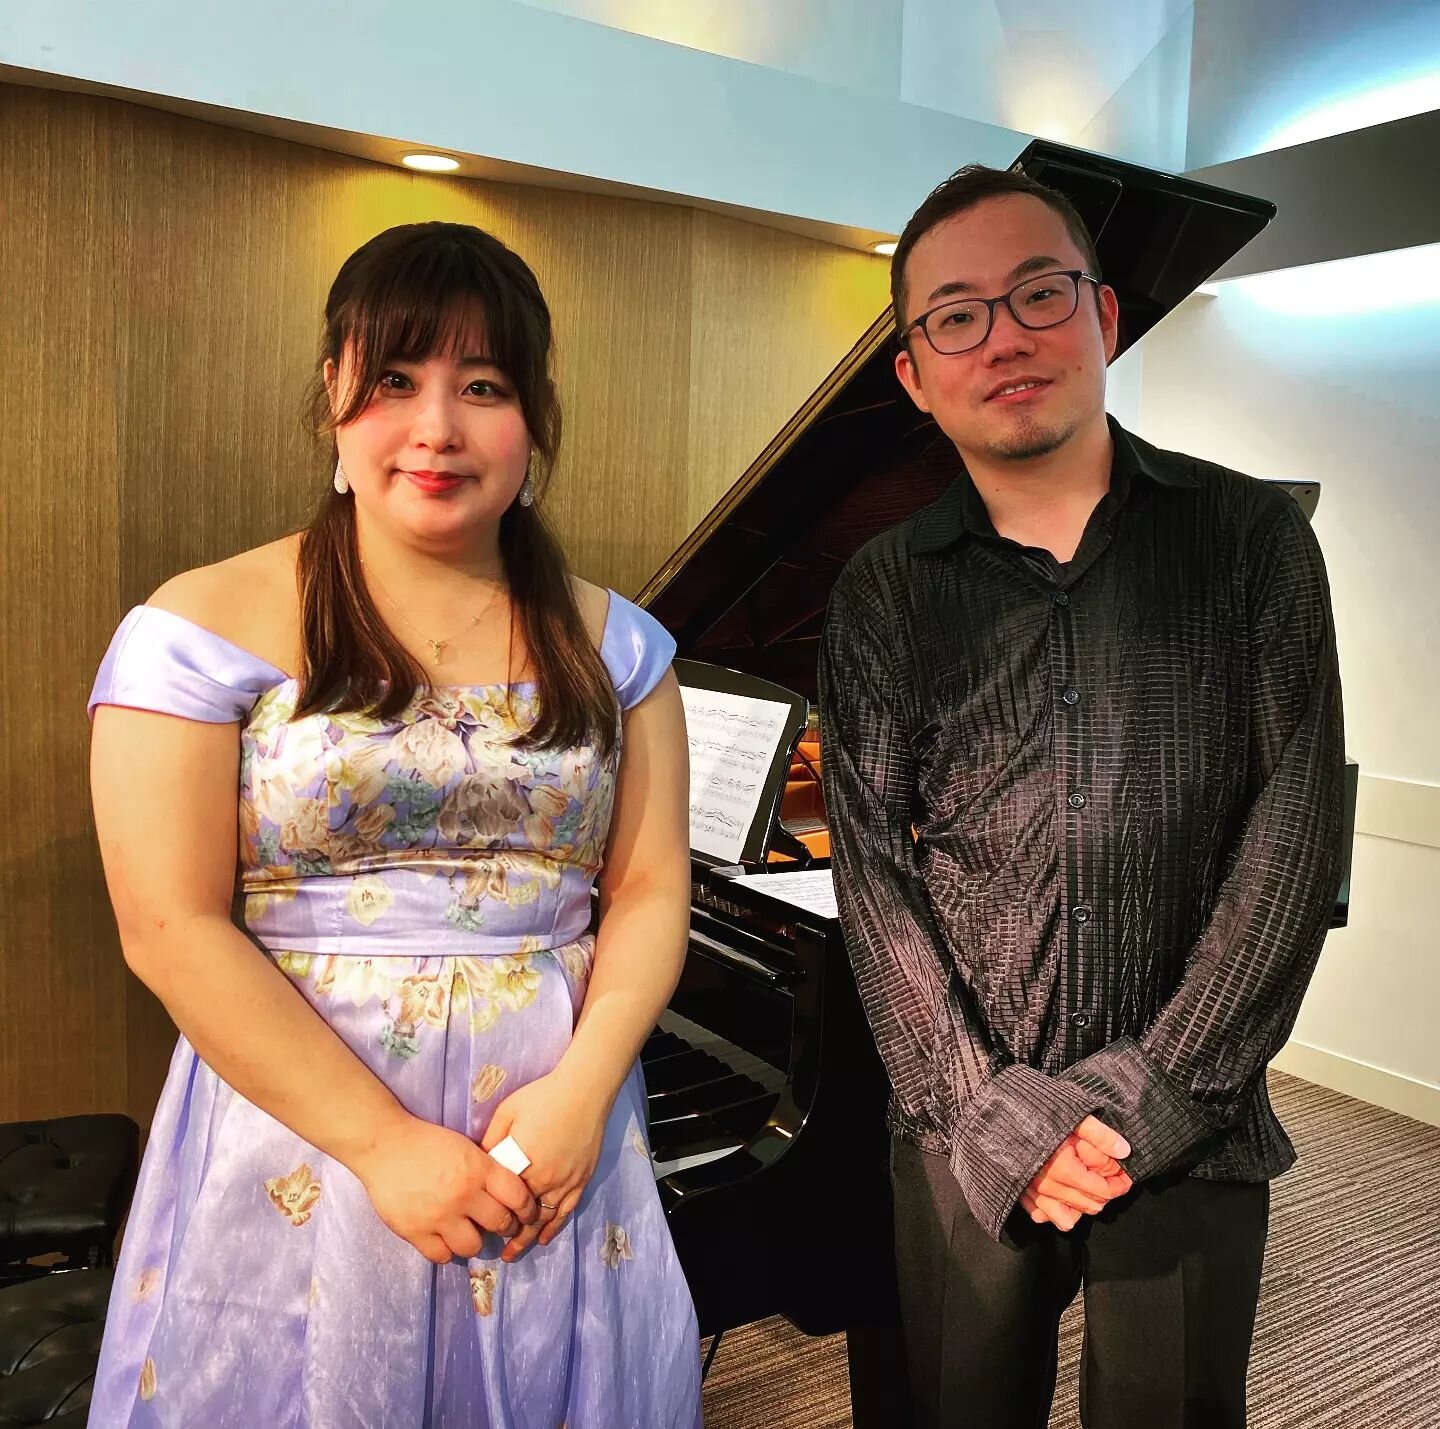 先週末、東京での２日間公演のジョイントリサイタル、無事終わりました。

お越しくださったみなさん、ありがとうございました。

@chiakispf  とは初の共演だったけど楽しかった～！
また、パート2もあるかも? 😎

#classicalmusic #pianorecital #pianists #クラシック音楽 #ピアノ #ピアニスト #音楽好きな人と繋がりたい